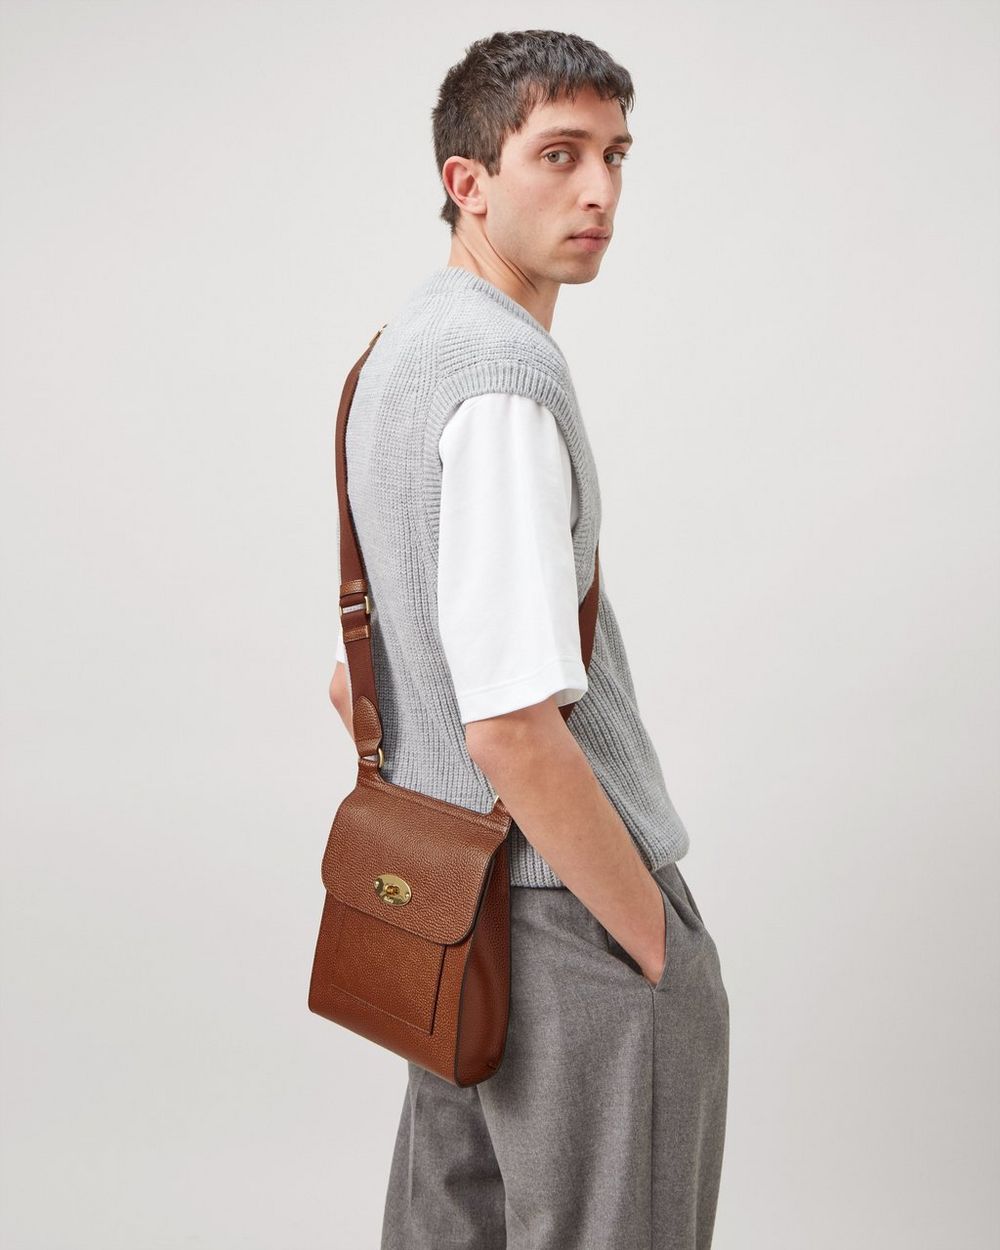 Antony Full-Grain Leather Messenger Bag